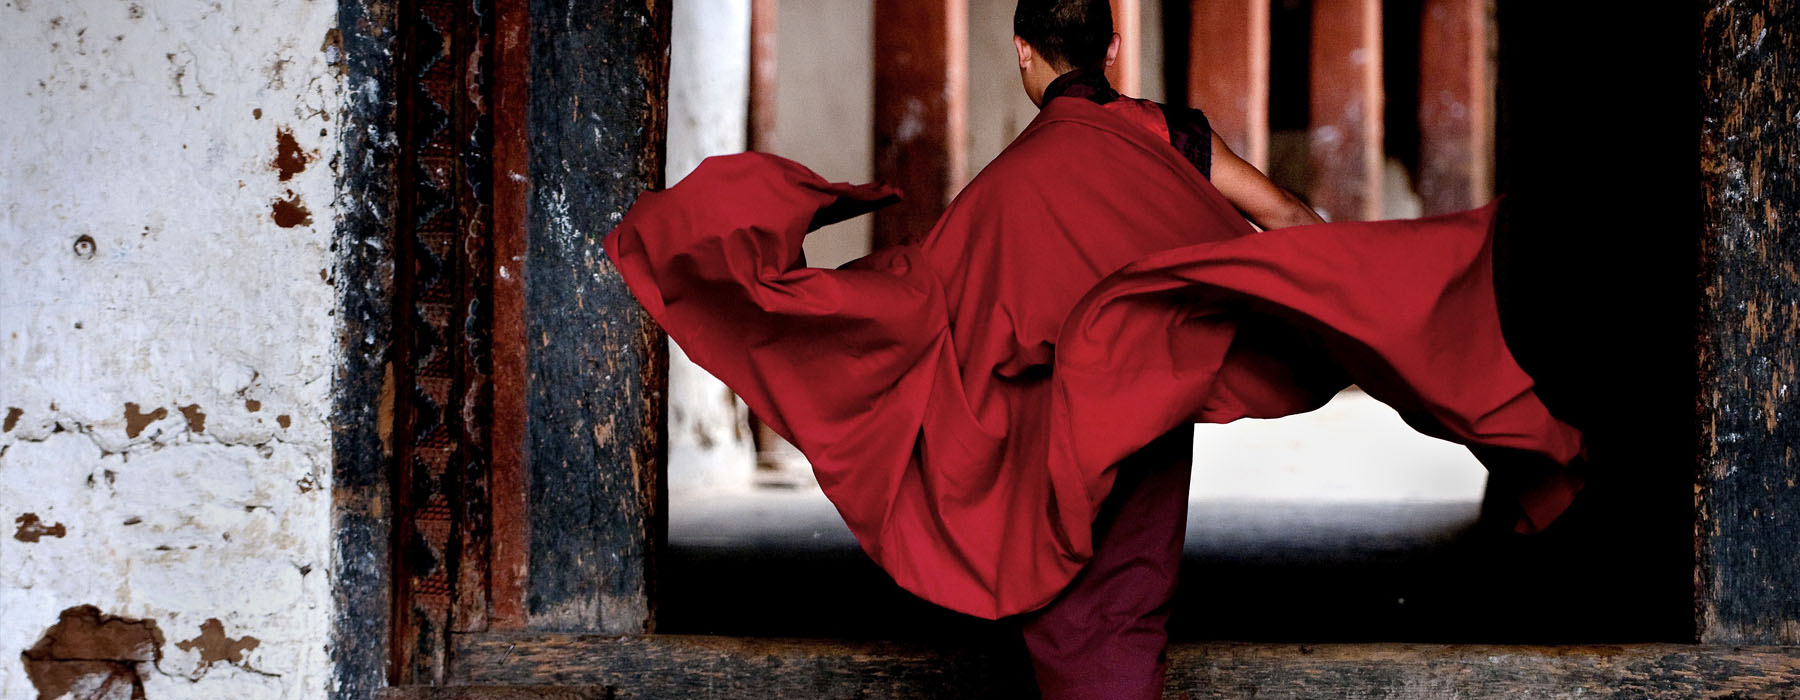 Bouts du monde Bhoutan